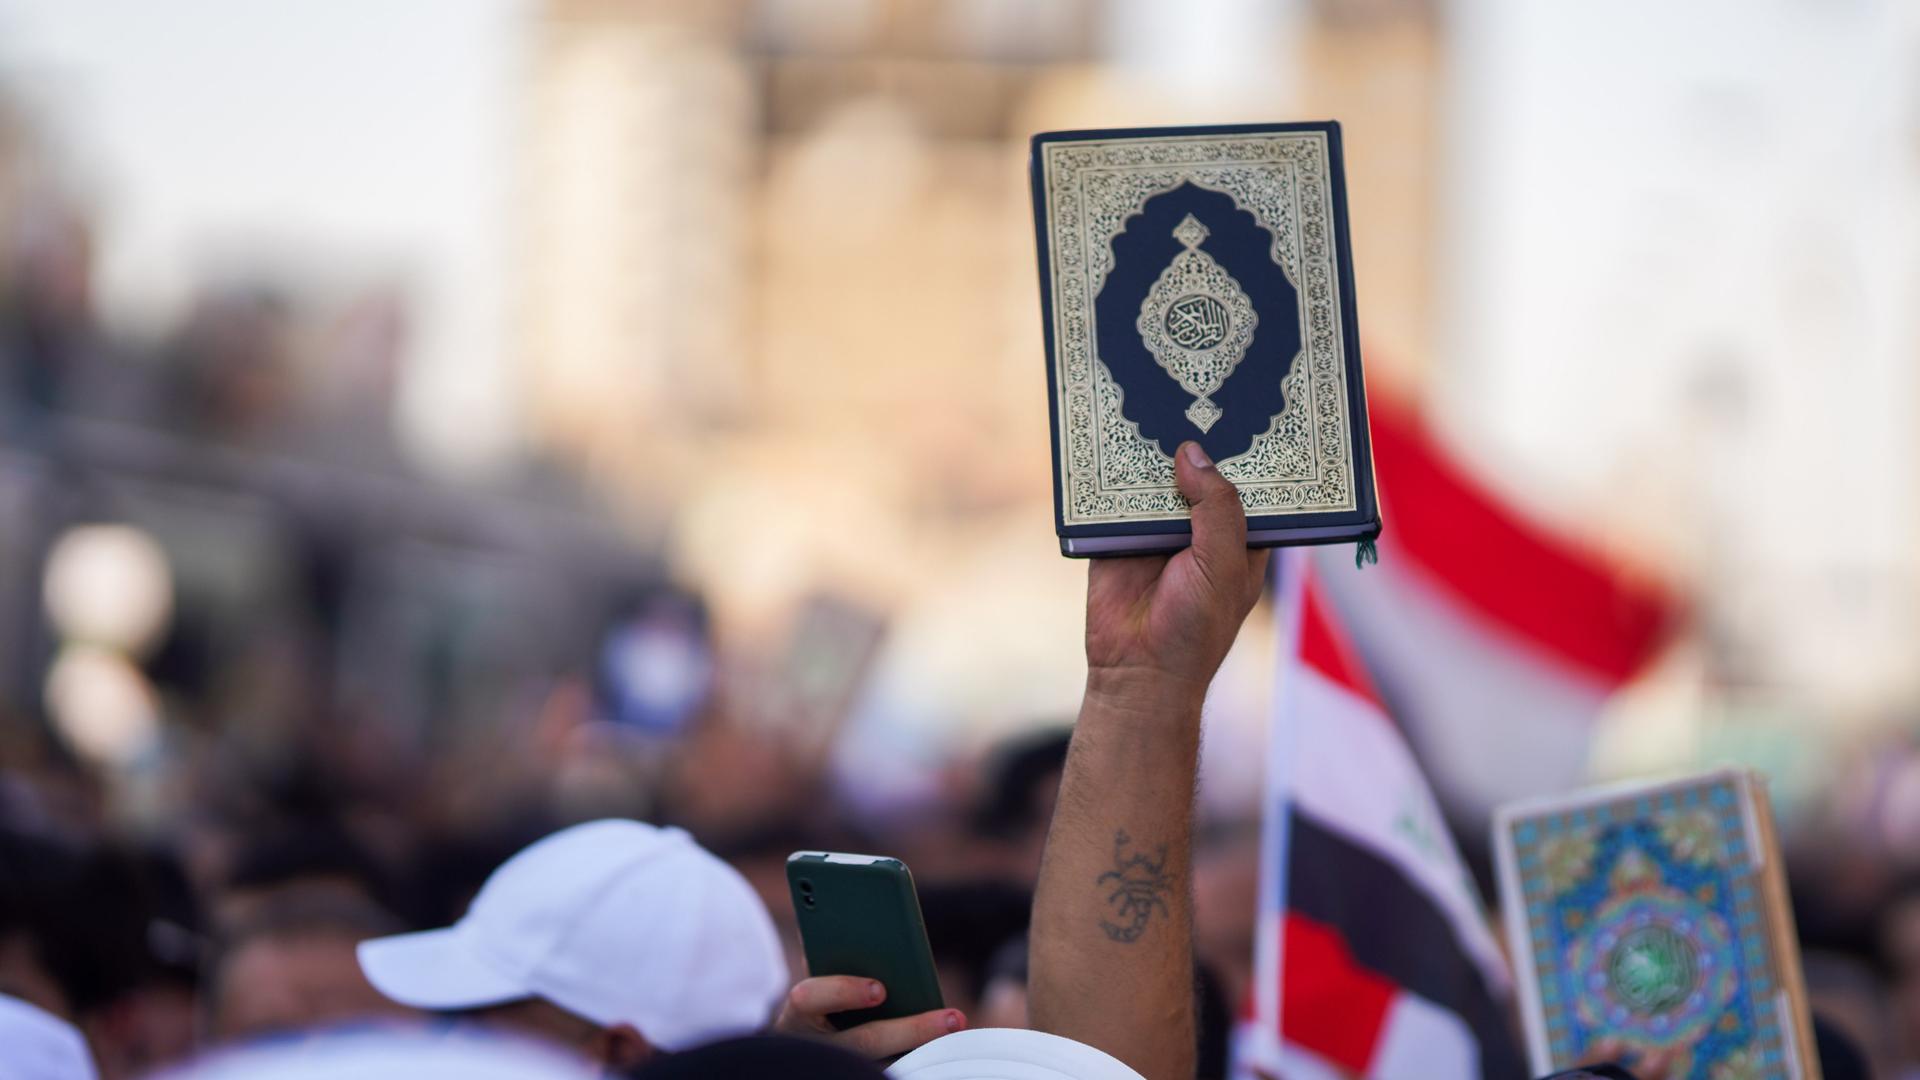 Ein Mann hält einen Koran auf einer Demonstration im Irak nach oben.